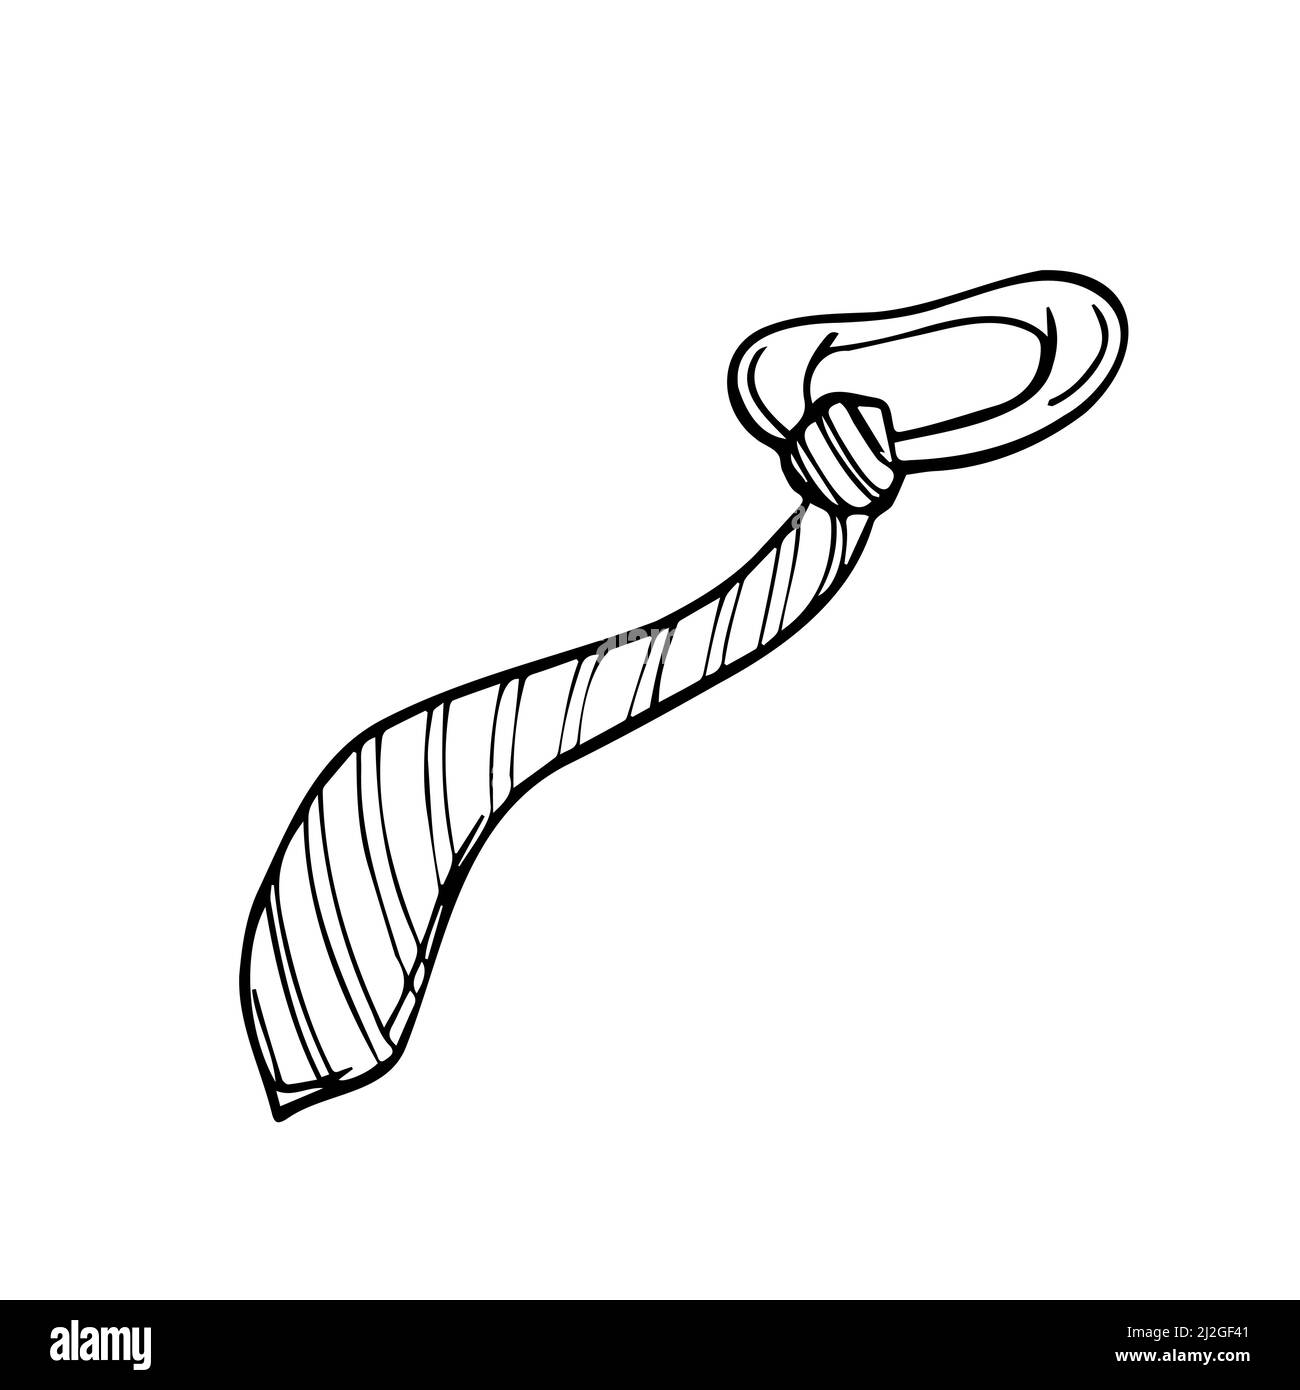 Cravate Doodle, une illustration de papillon de dessin à la main d'une  cravate. Isolé sur blanc Image Vectorielle Stock - Alamy